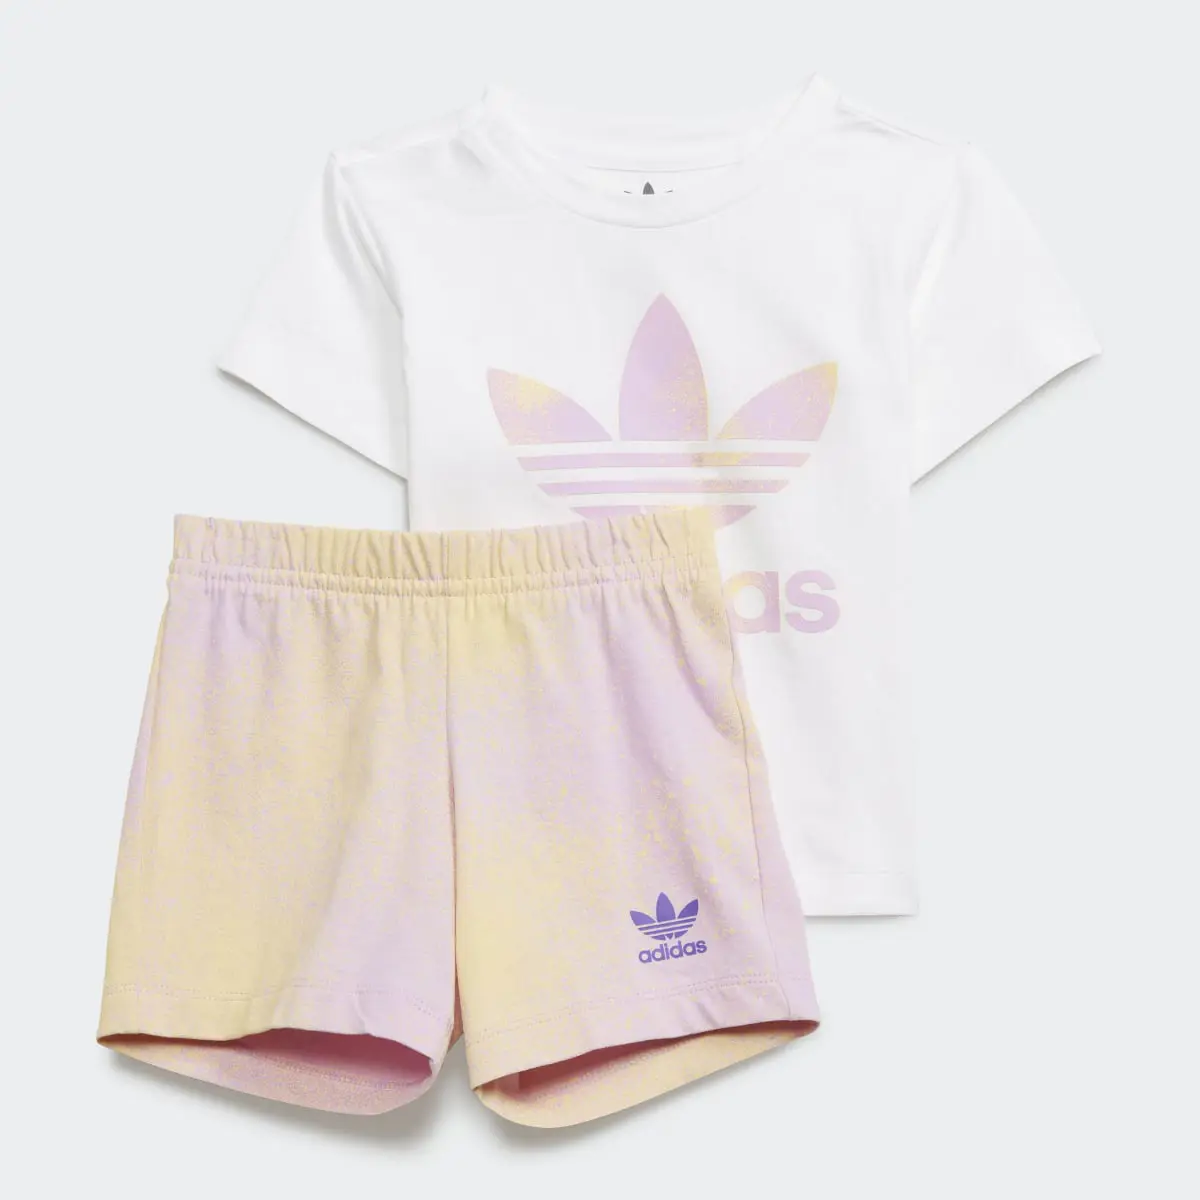 Adidas Graphic Logo Shorts and T-Shirt Set. 2